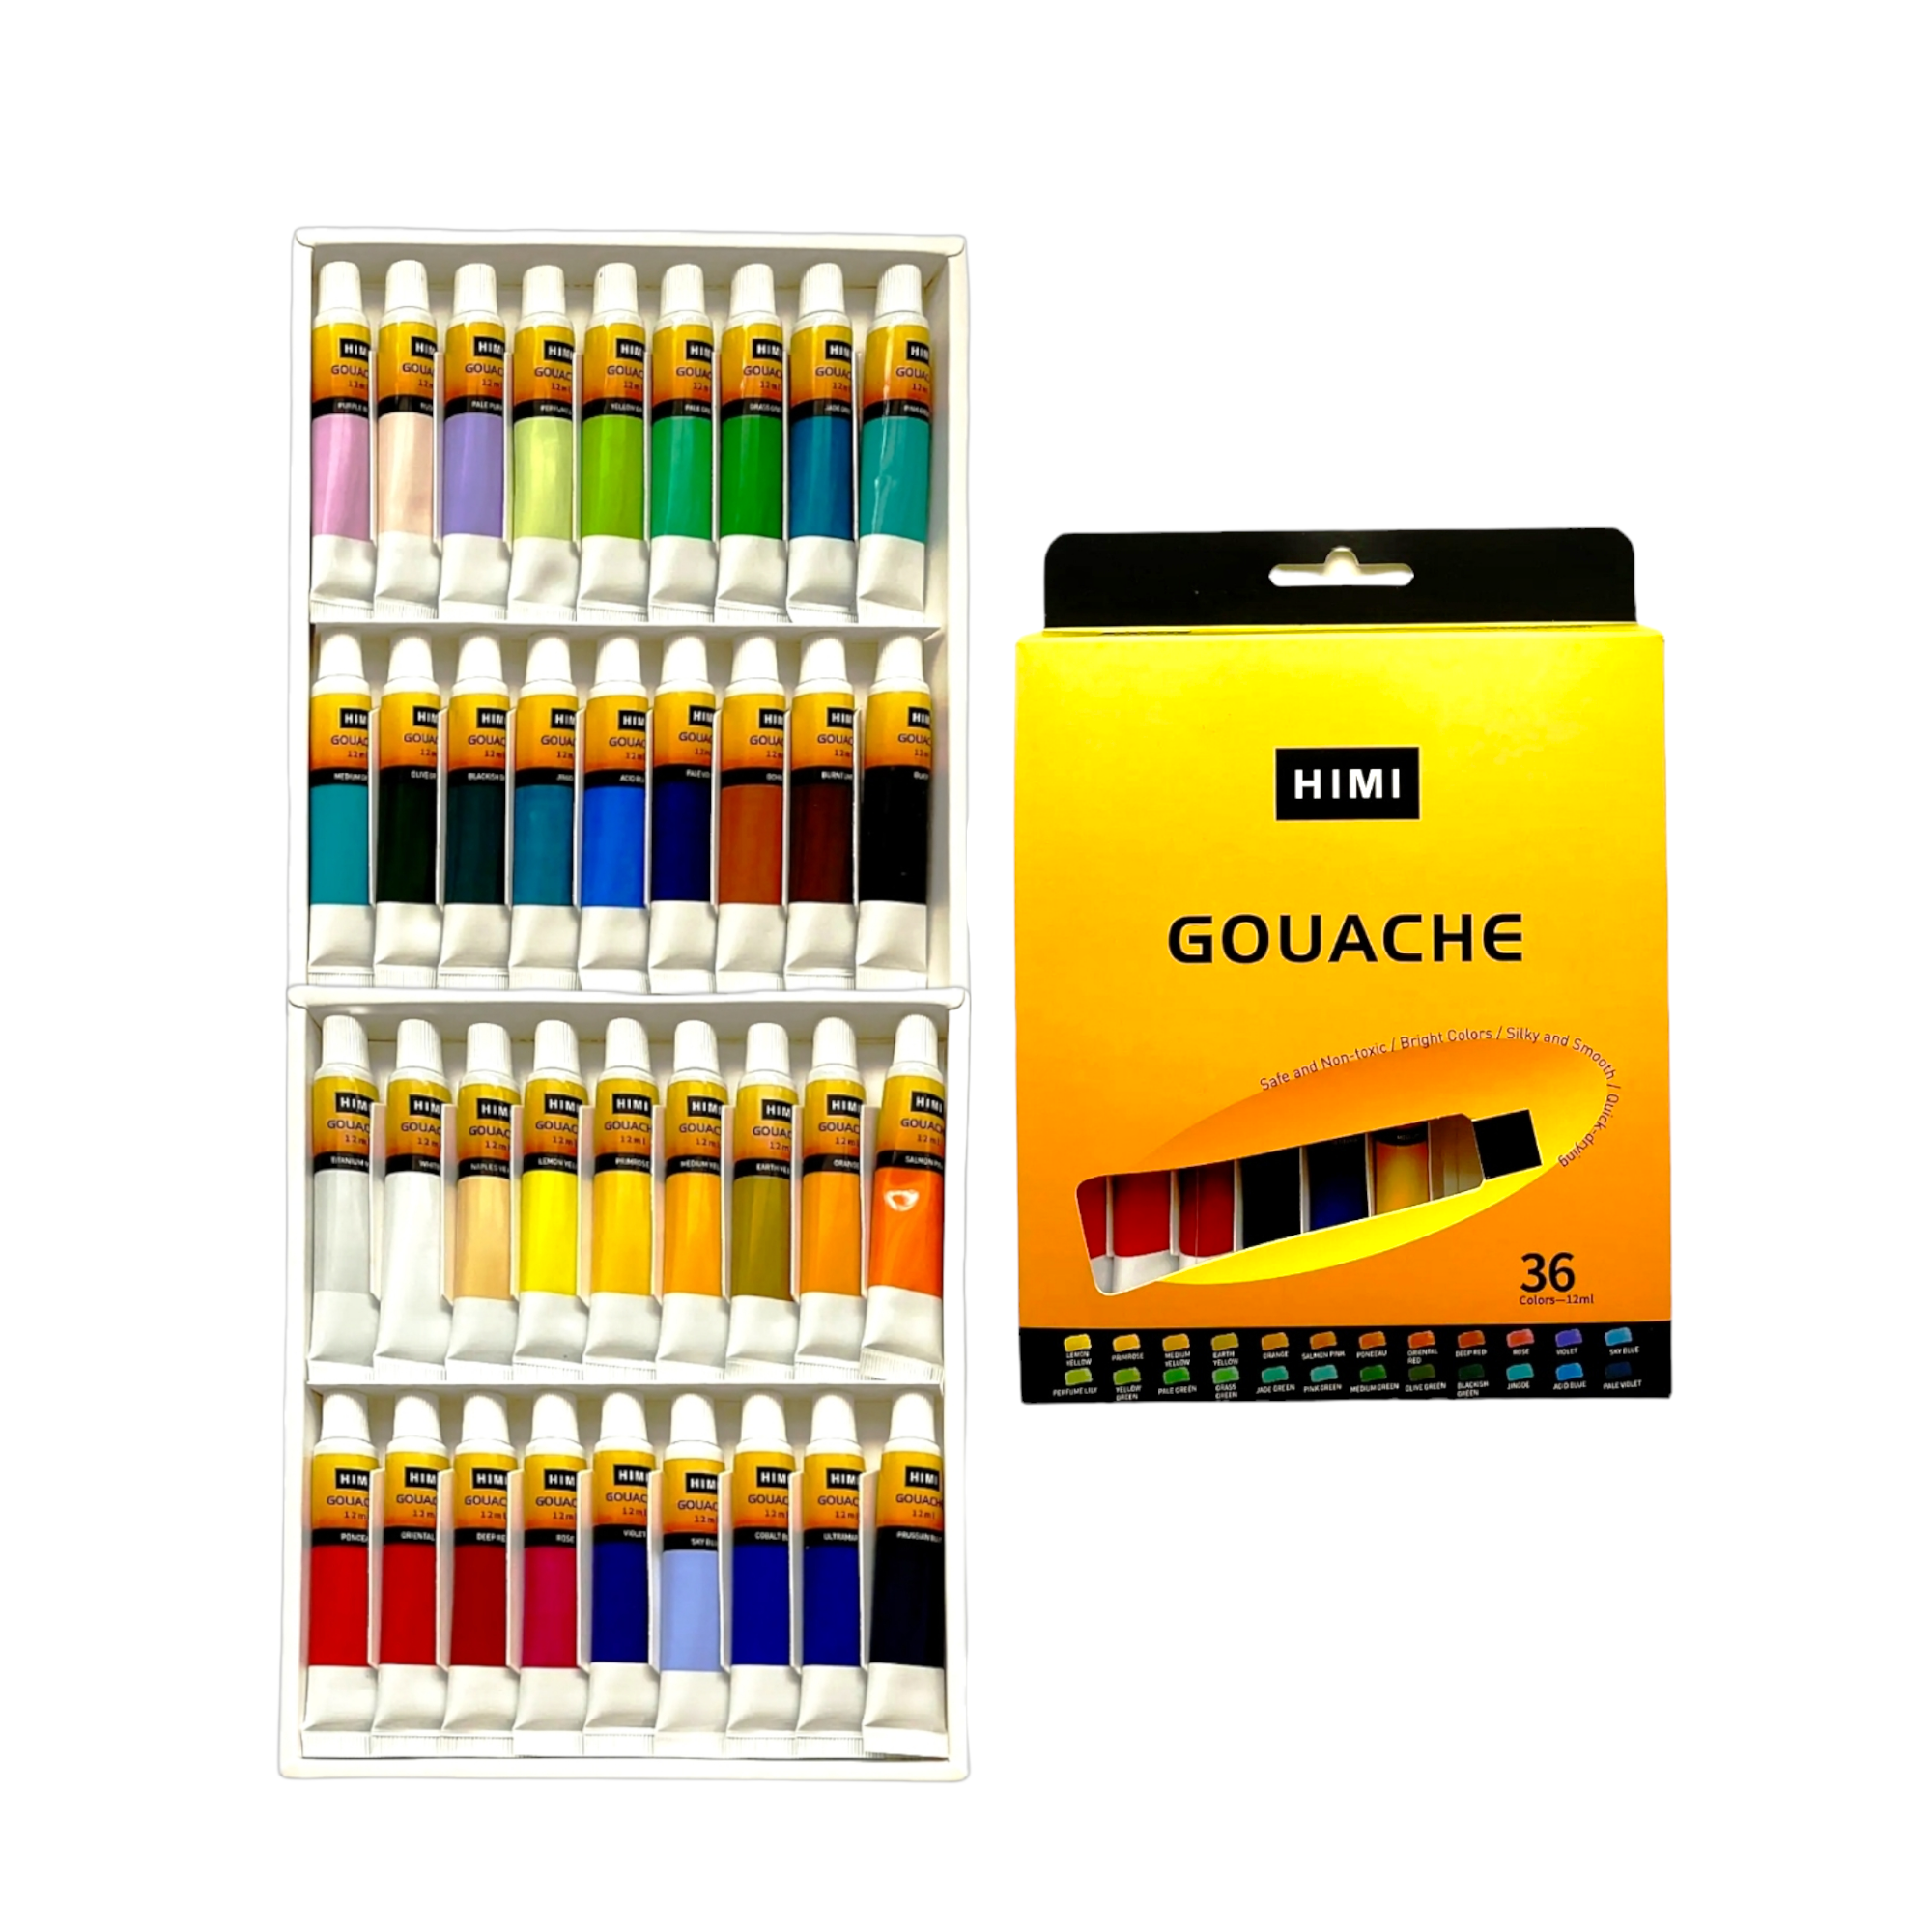 HIMI Gouache Paint, 36 Colors, 12ml, 0.4 US fl oz Tubes, Non Toxic